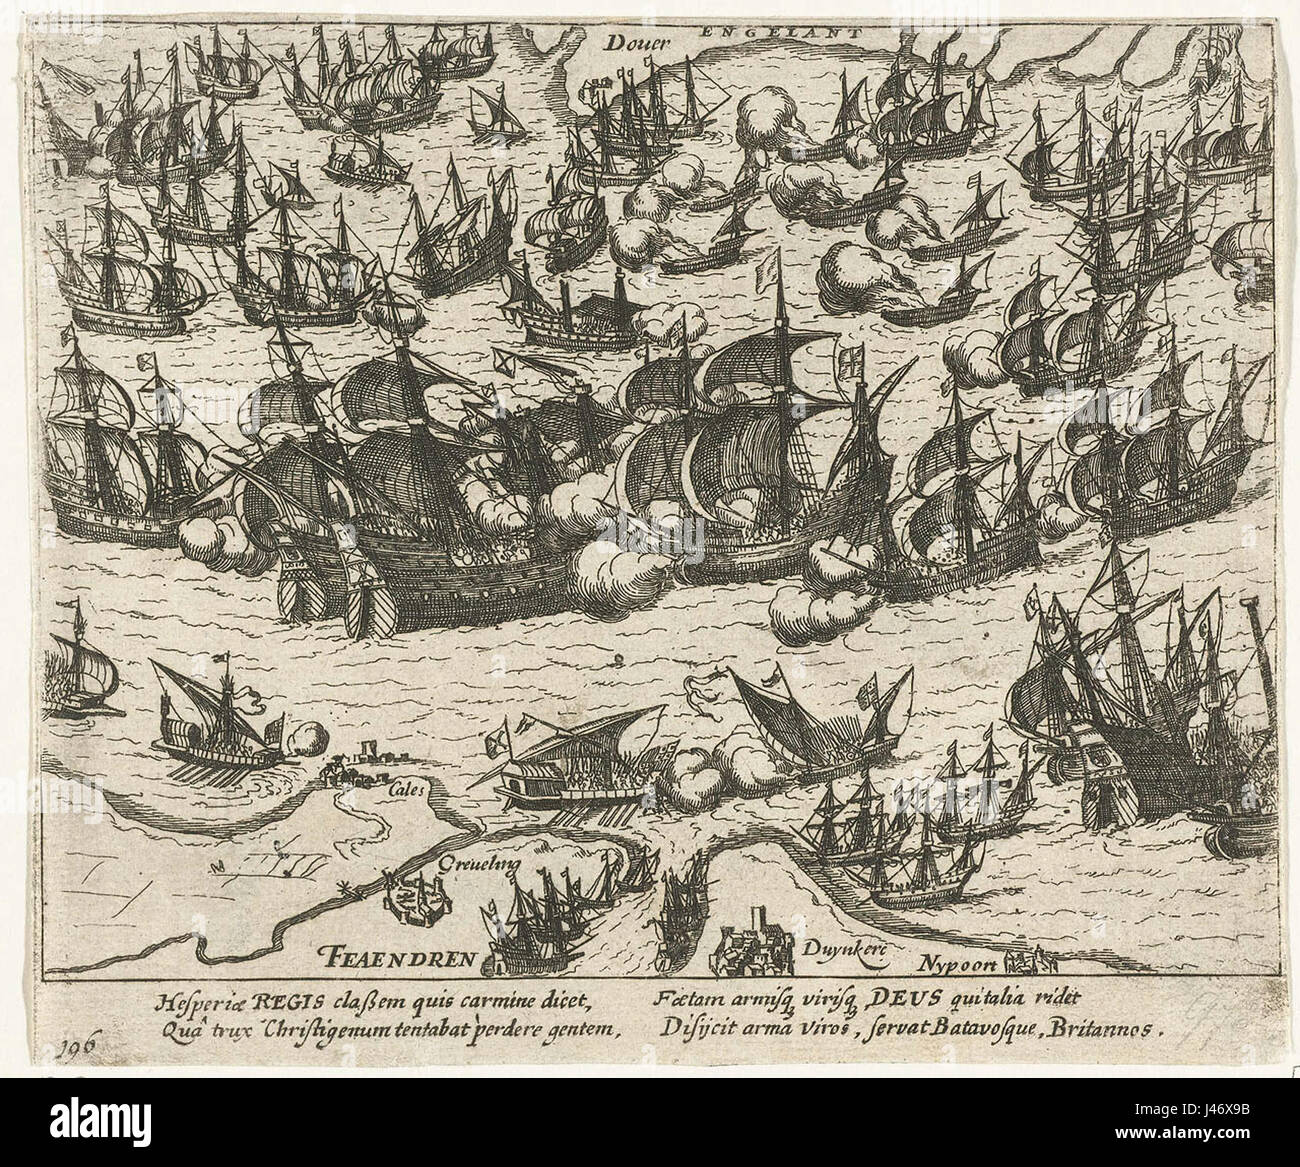 Bataille navale avec l'Armada espagnole Zeeslag met de Spaanse Armada Banque D'Images